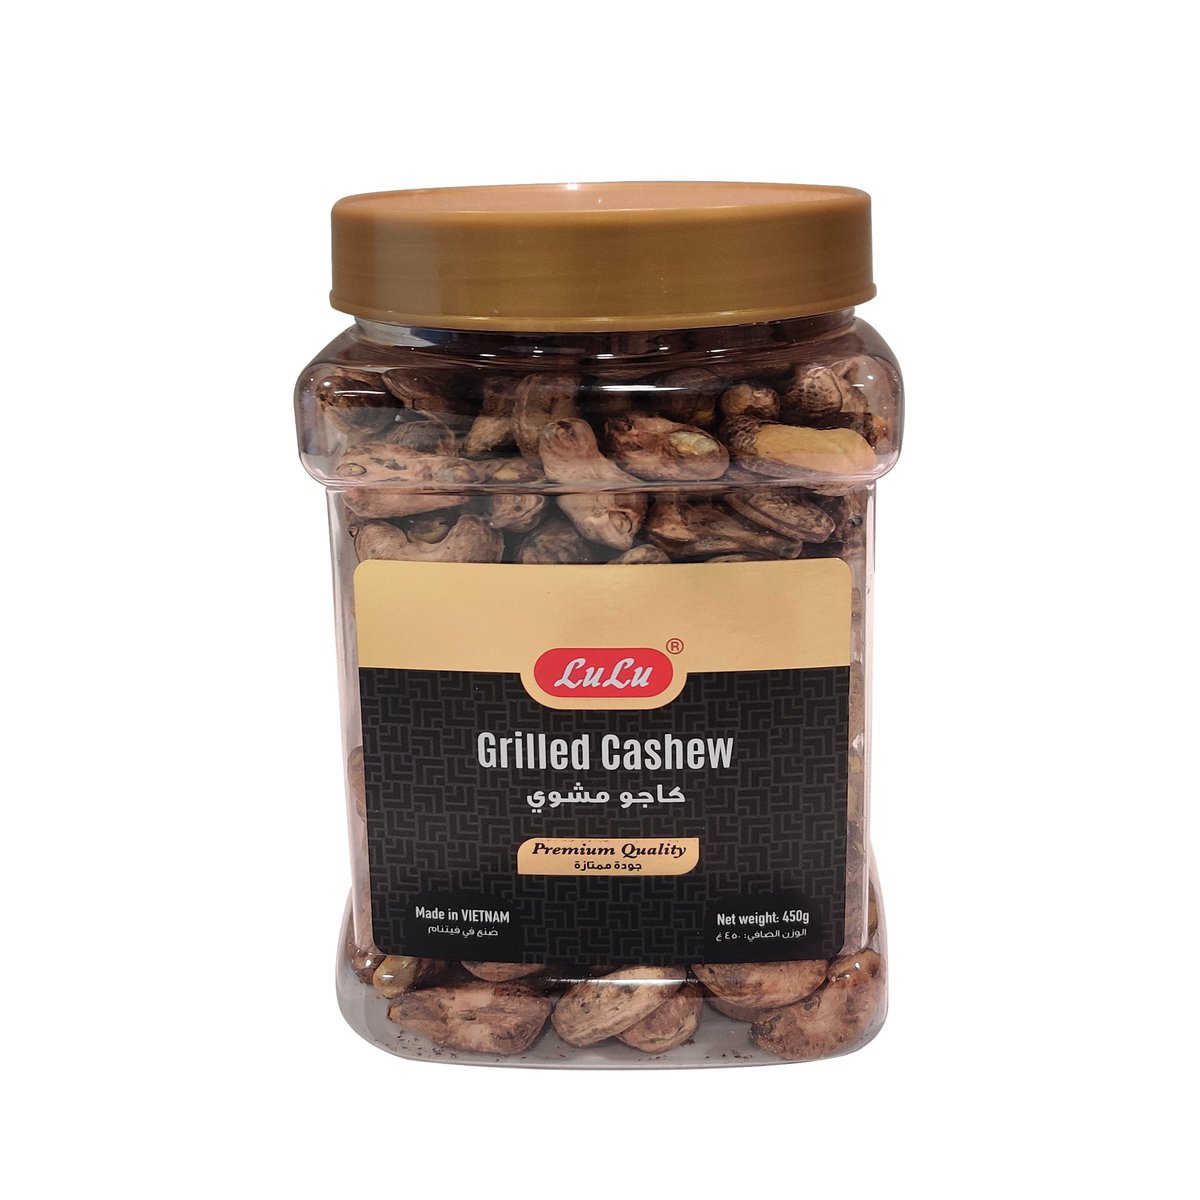 LuLu Grilled Cashew (W240) 450 g